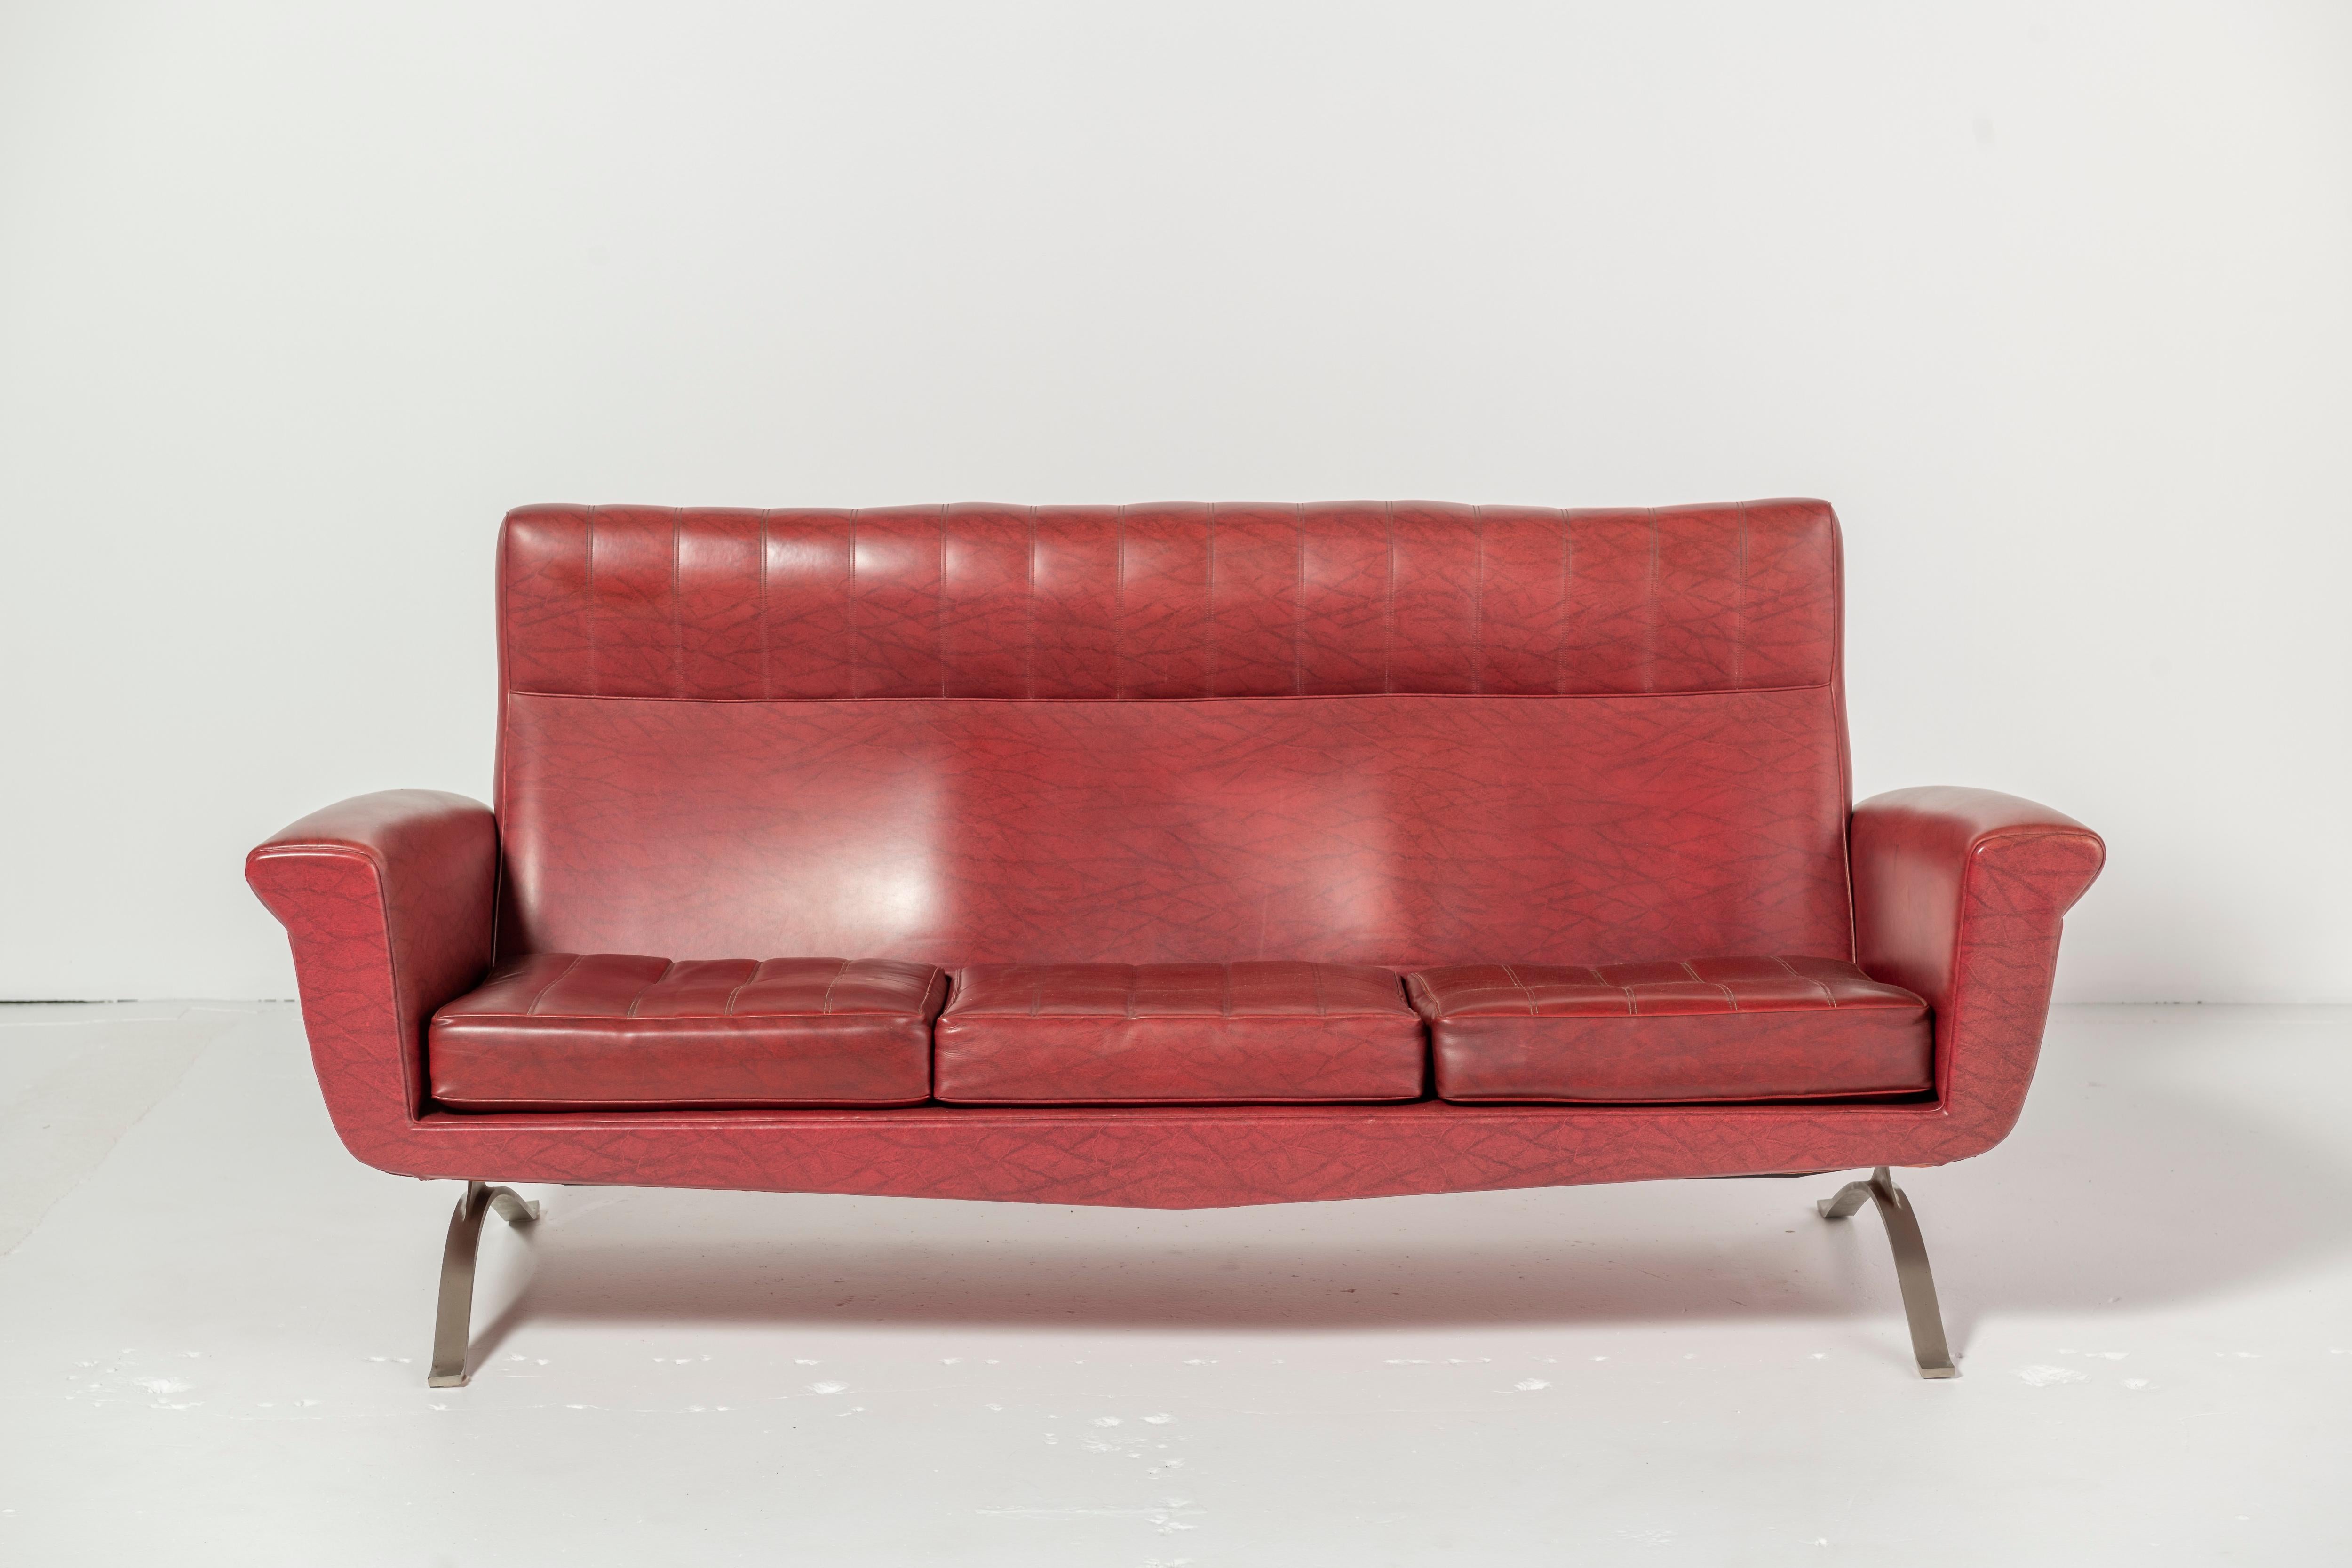 Sofa by Augusto Bozzi for Saporiti, Italia, 1950s in a delicious red leather.